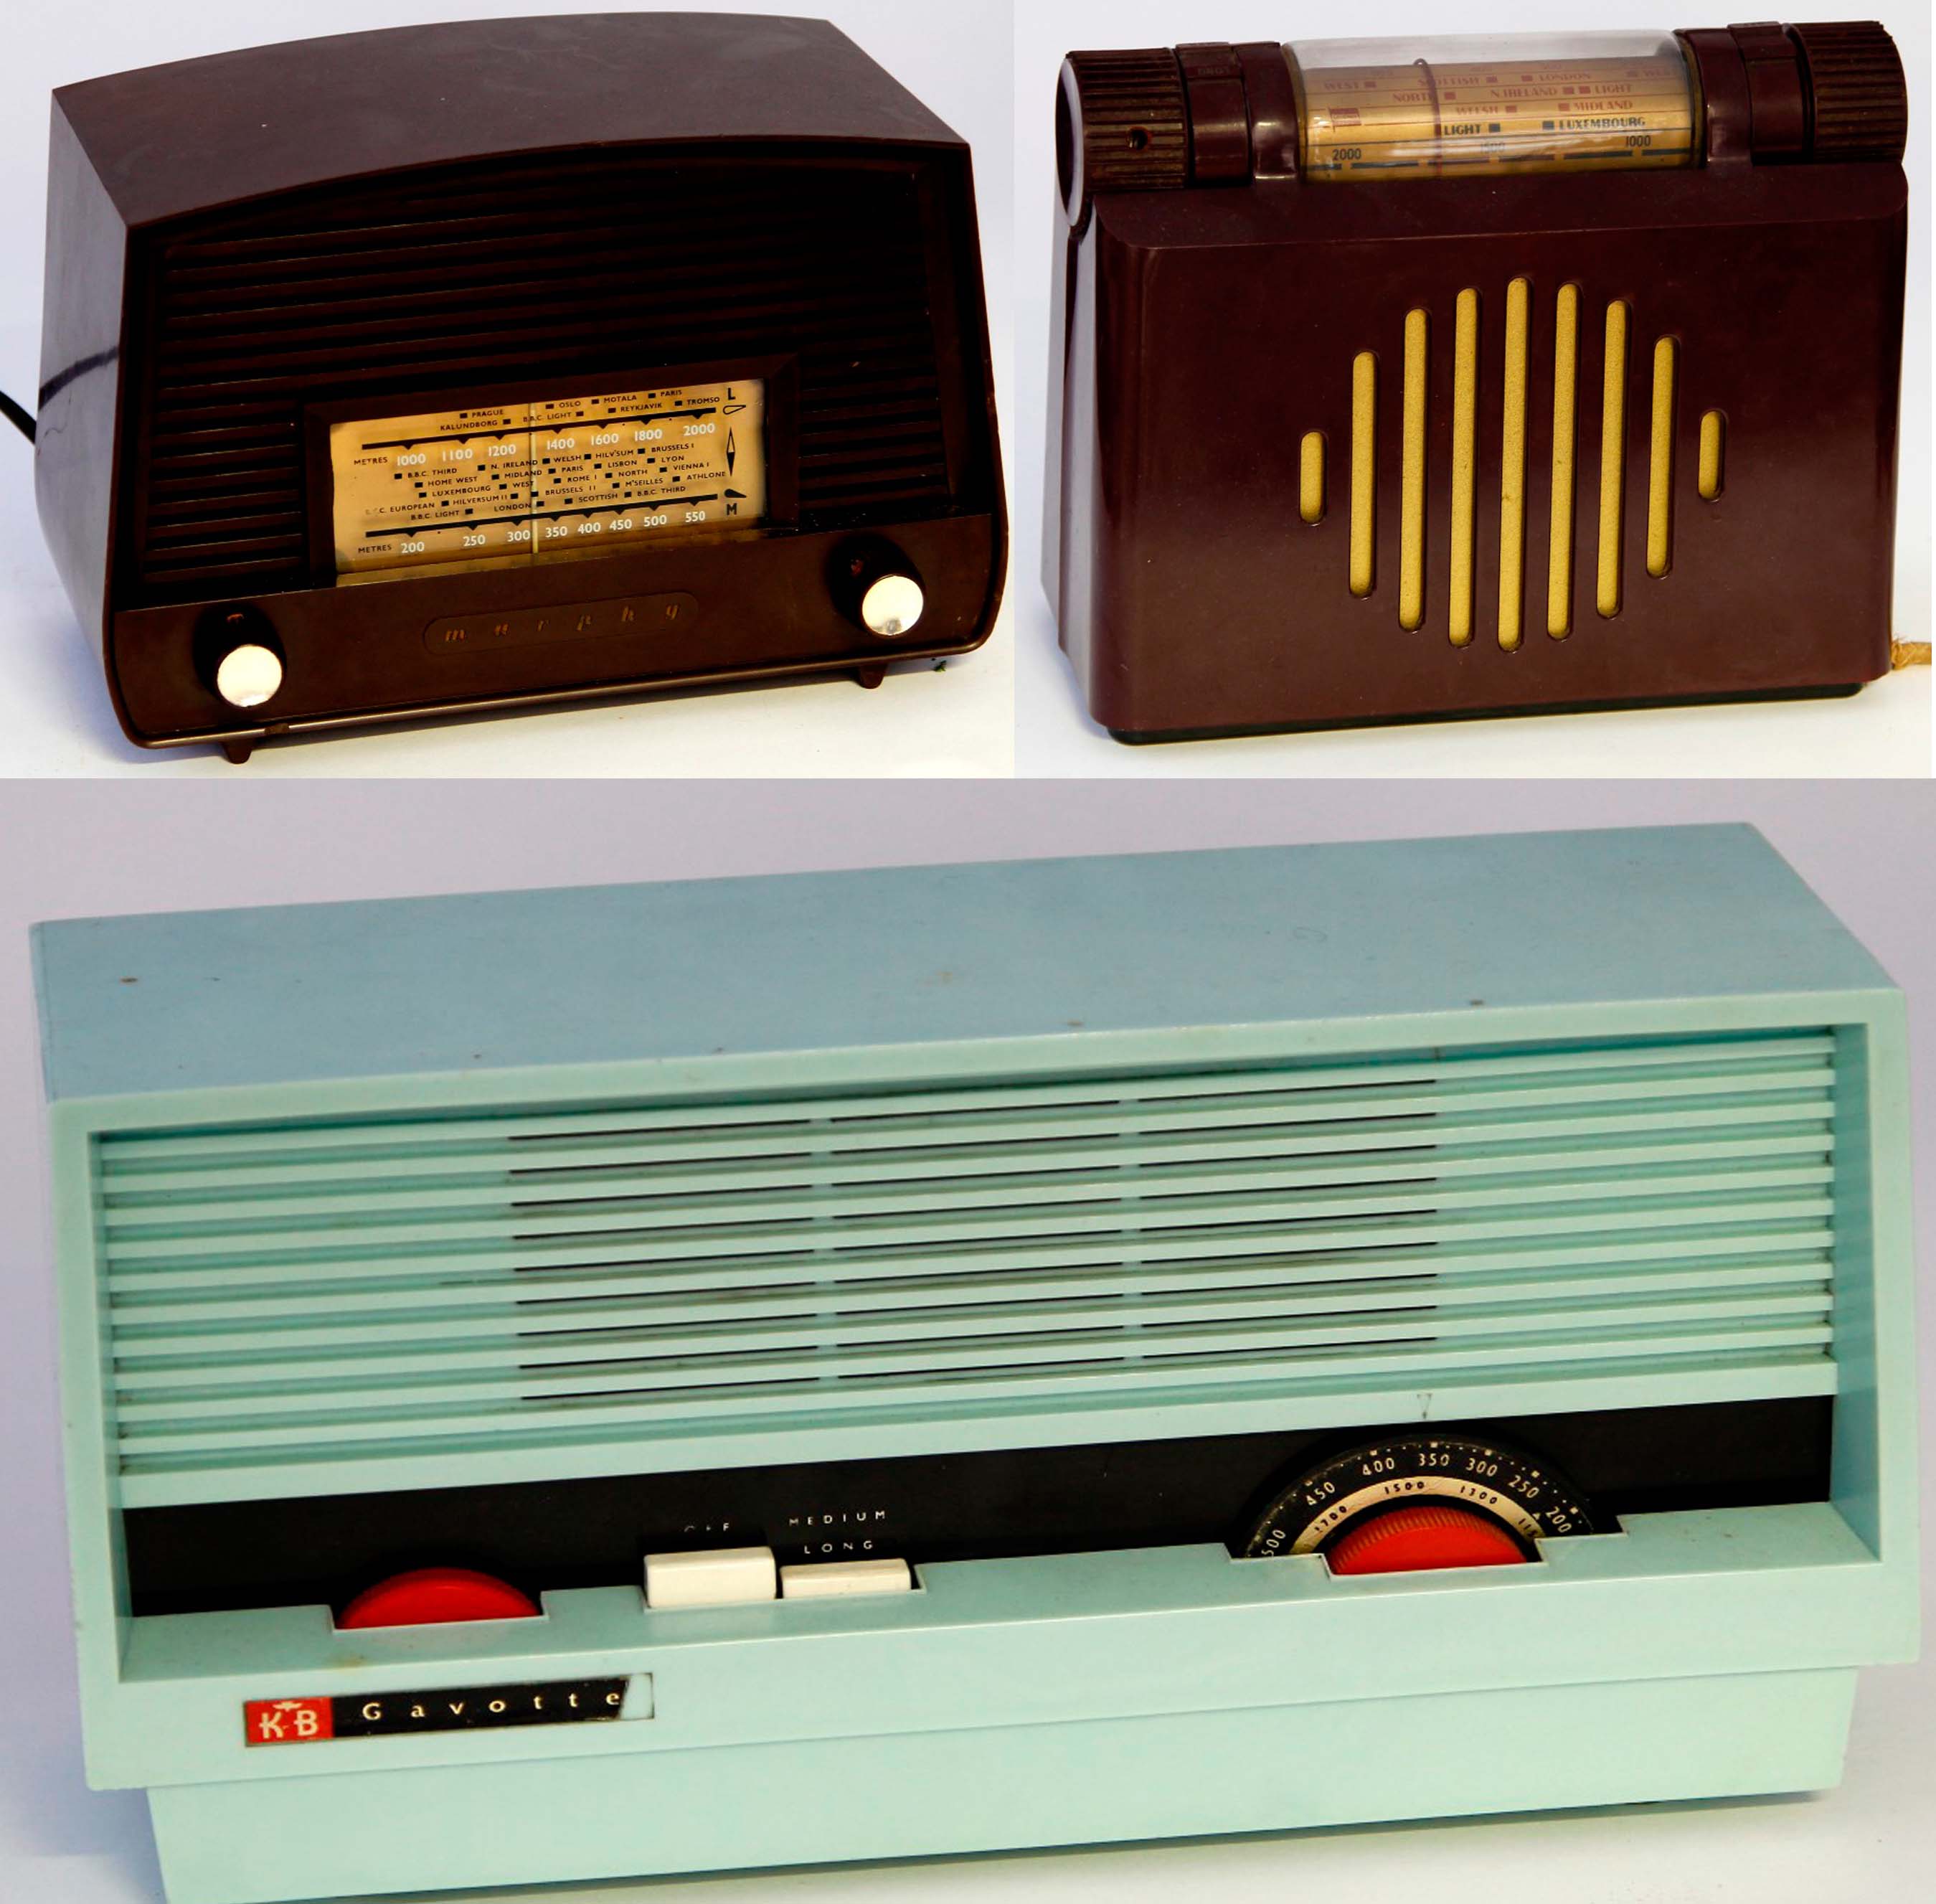 A 1947 Murphy A100 Bakelite valve radio, a 1950s Murphy U198H Bakelite valve radio and a 1960s KB